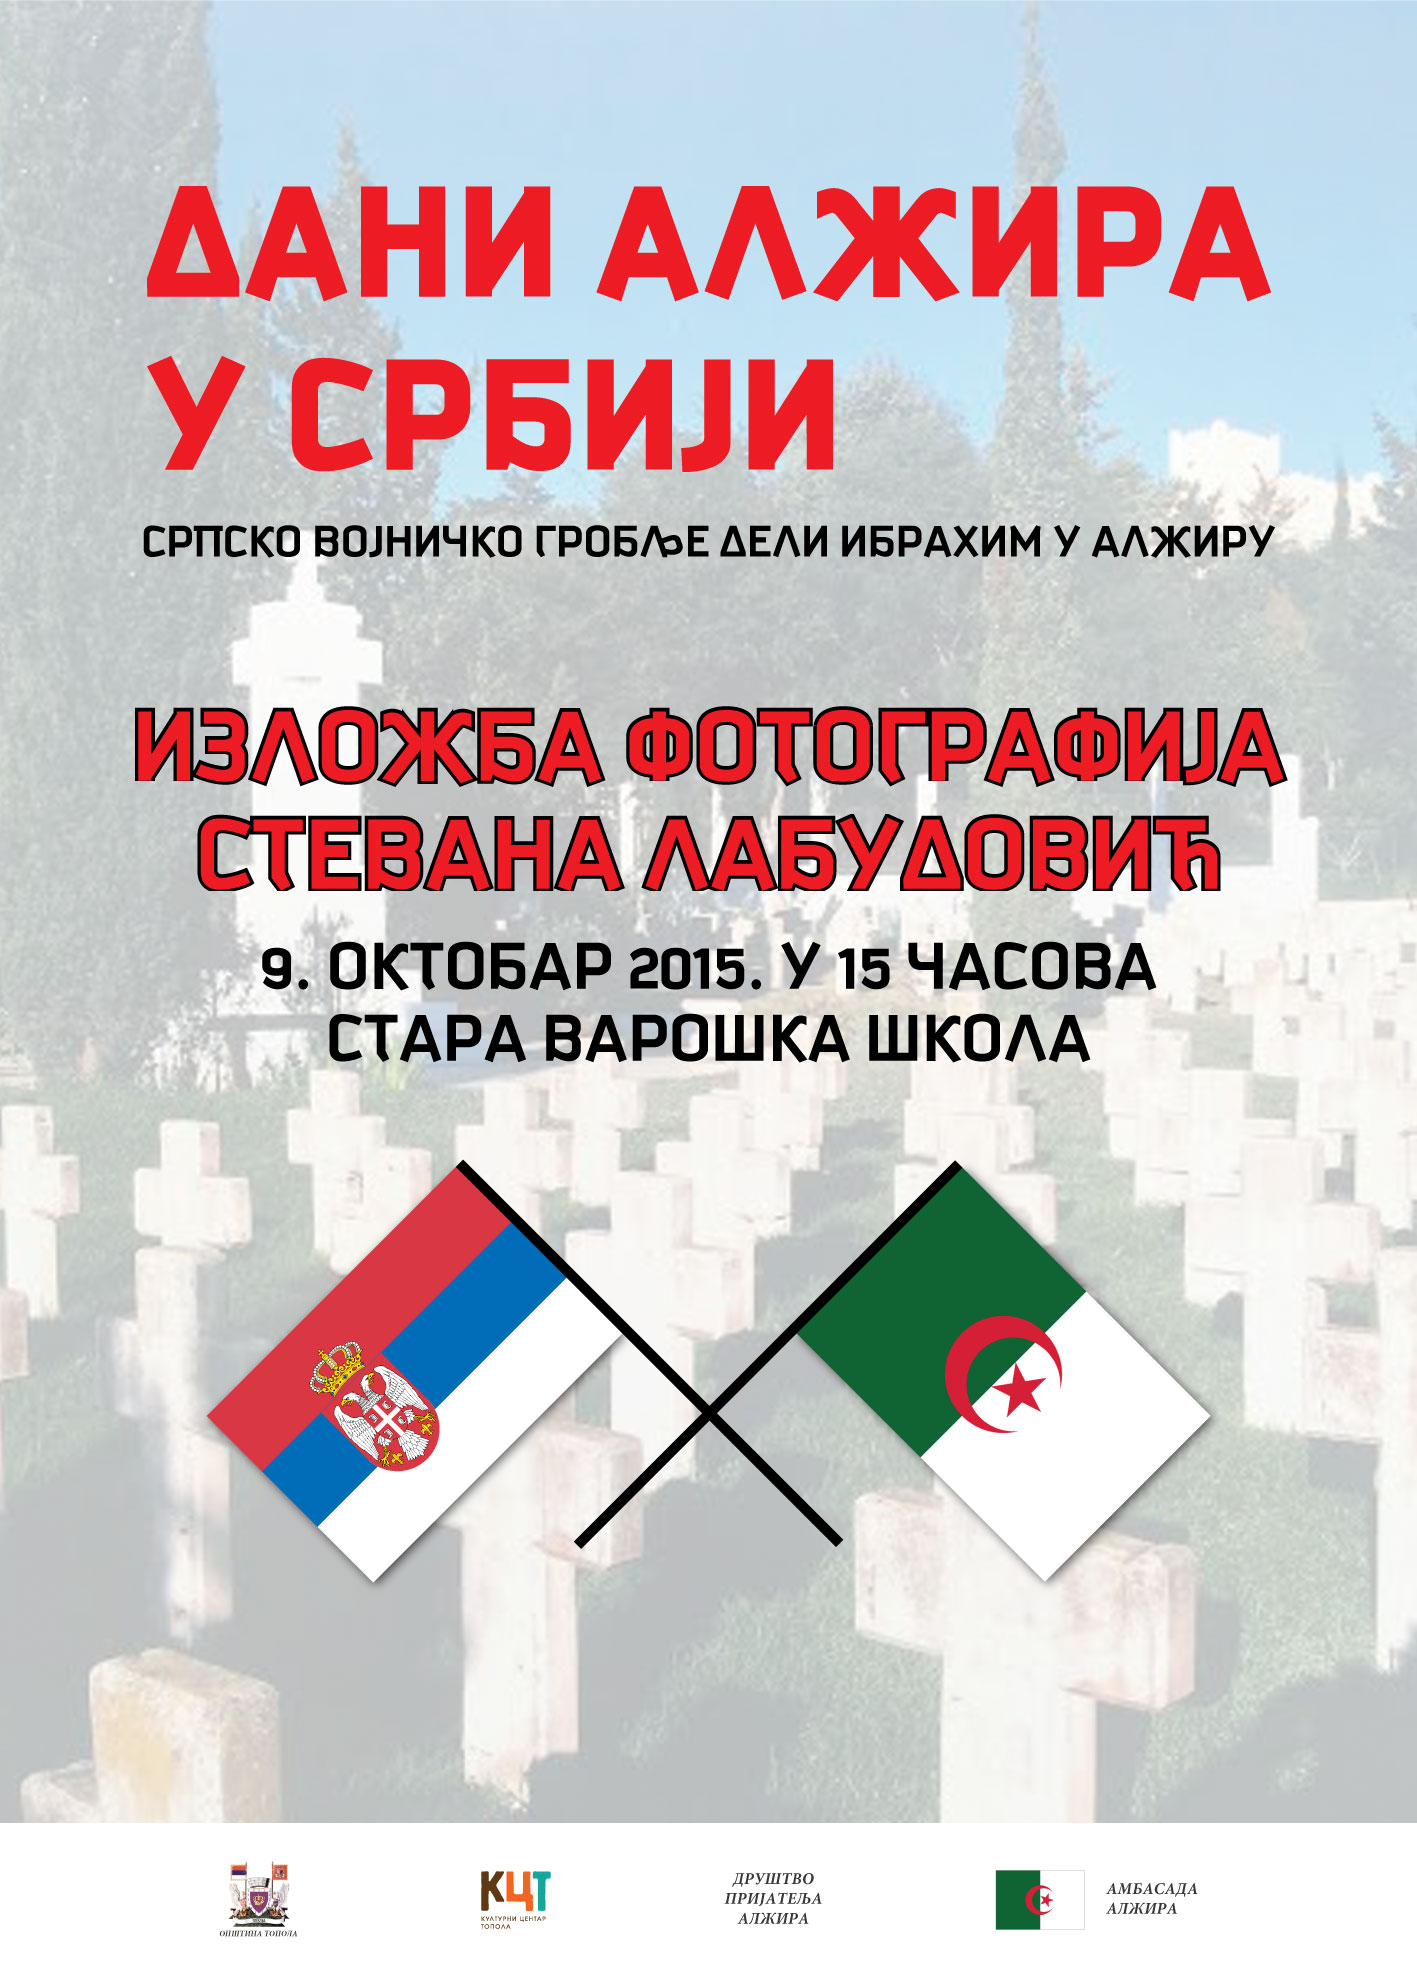 Plakat Dan Alzira u Topoli i izlozba Stevana Labudovica Srpsko vojnicko groblje Deli Ibrahim 